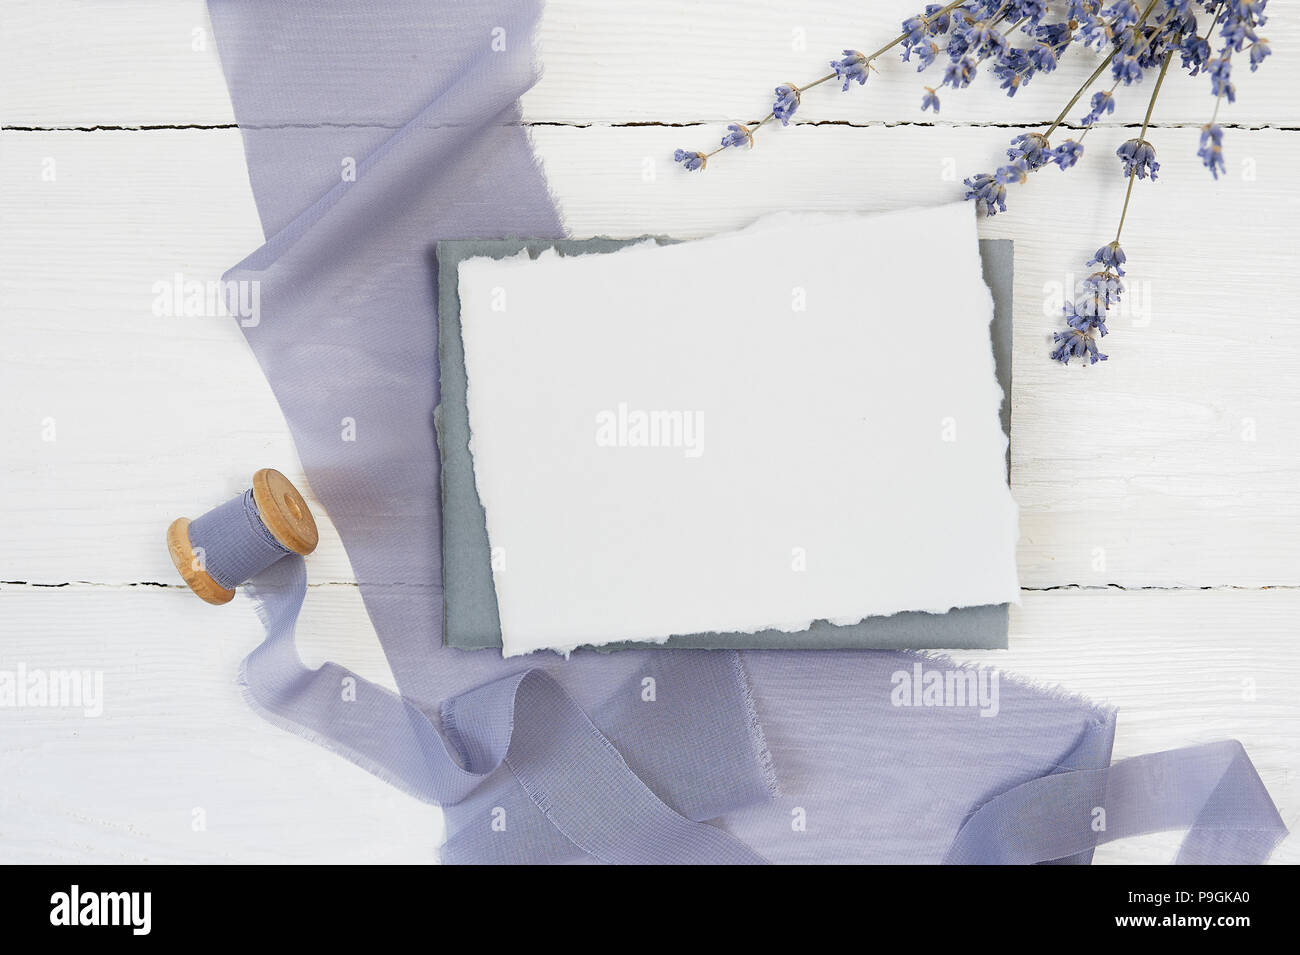 Carte de voeux vierge blanc ruban sur un fond de toile bleue avec des fleurs de lavande sur un fond blanc. Immersive avec enveloppe et carte vierge. Mise à plat. Vue d'en haut Banque D'Images